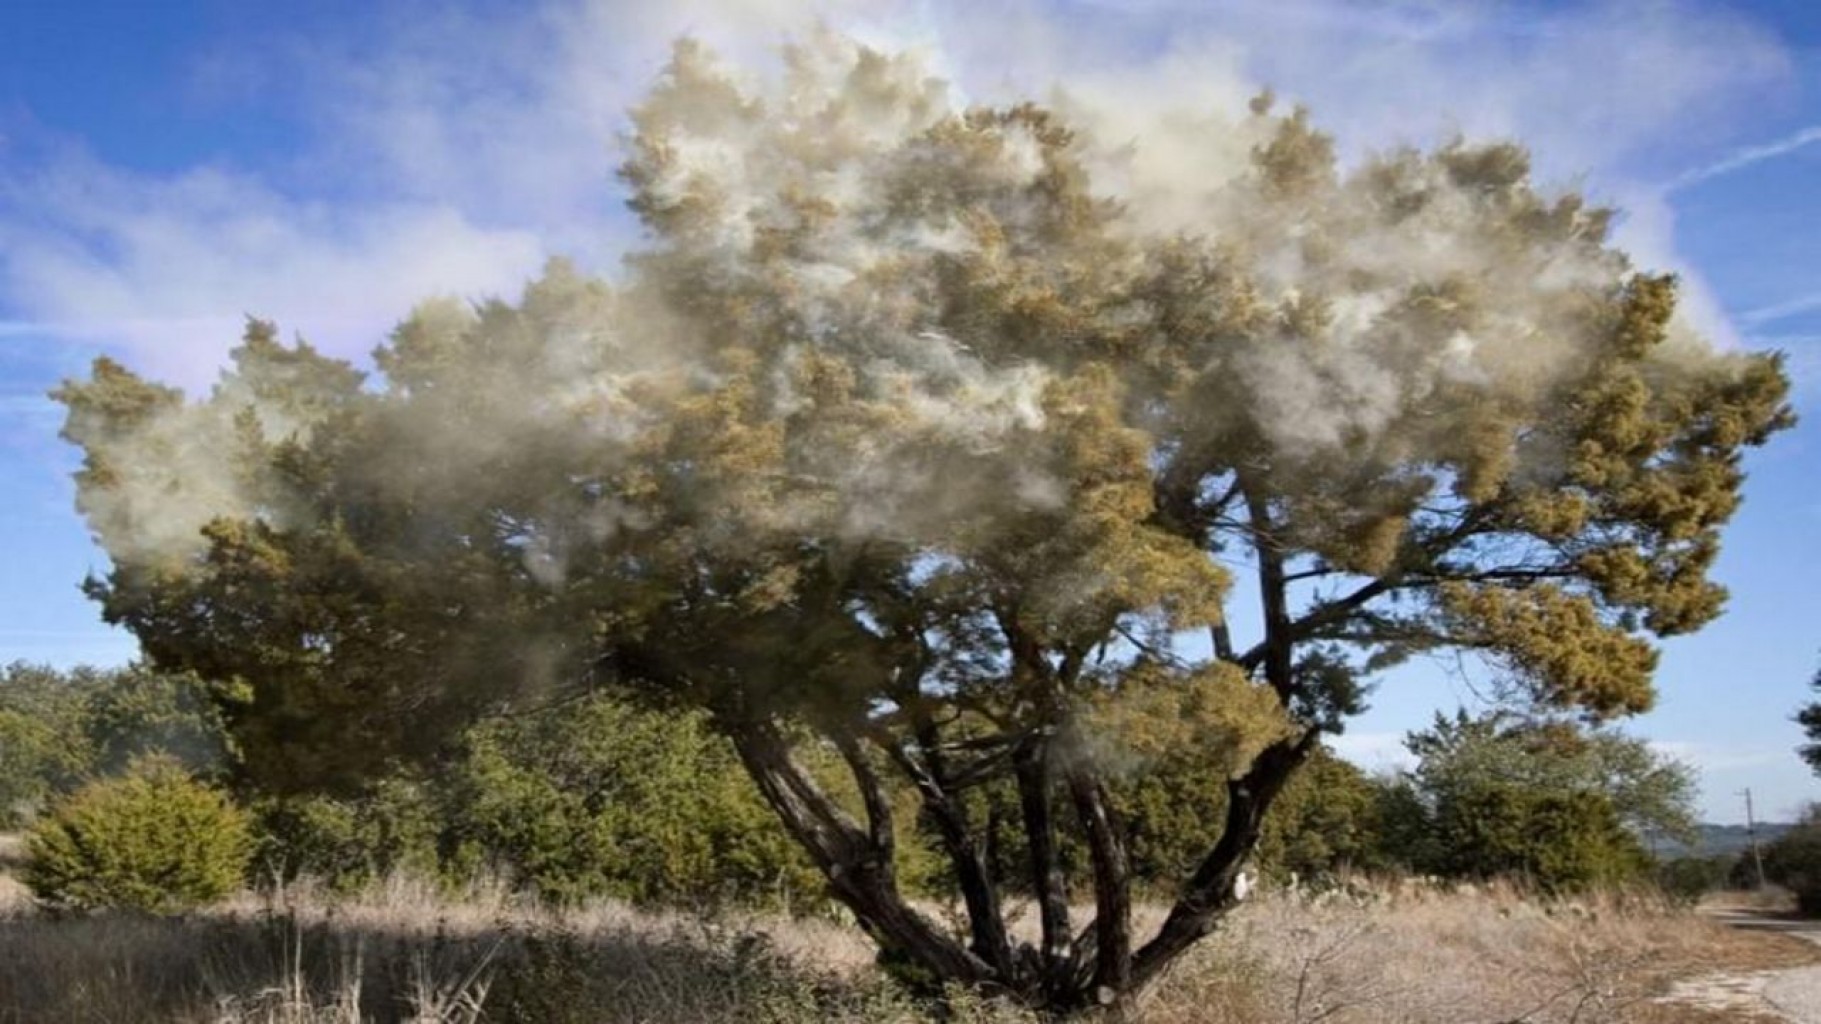 "ALERTA MUY ALTA" para el polen del árbol de cedro